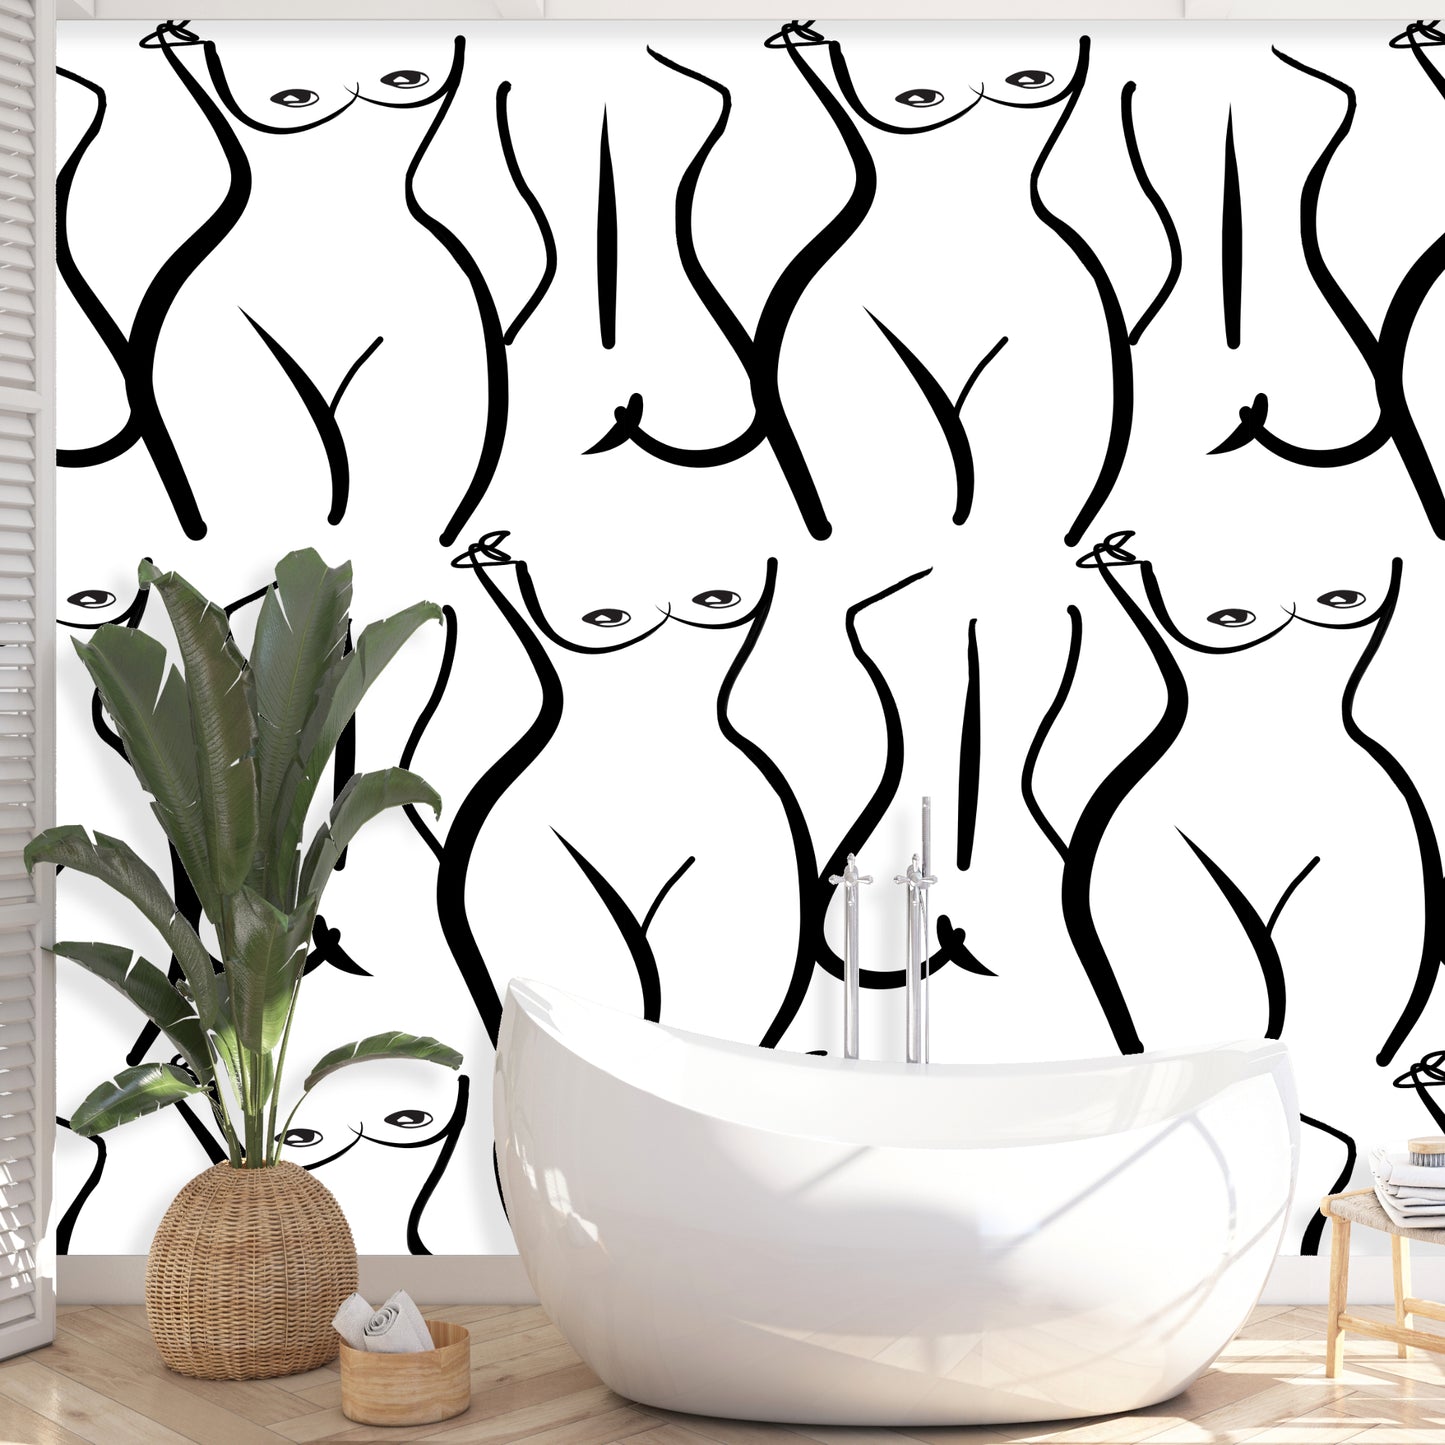 Woman silhouette Wallpaper